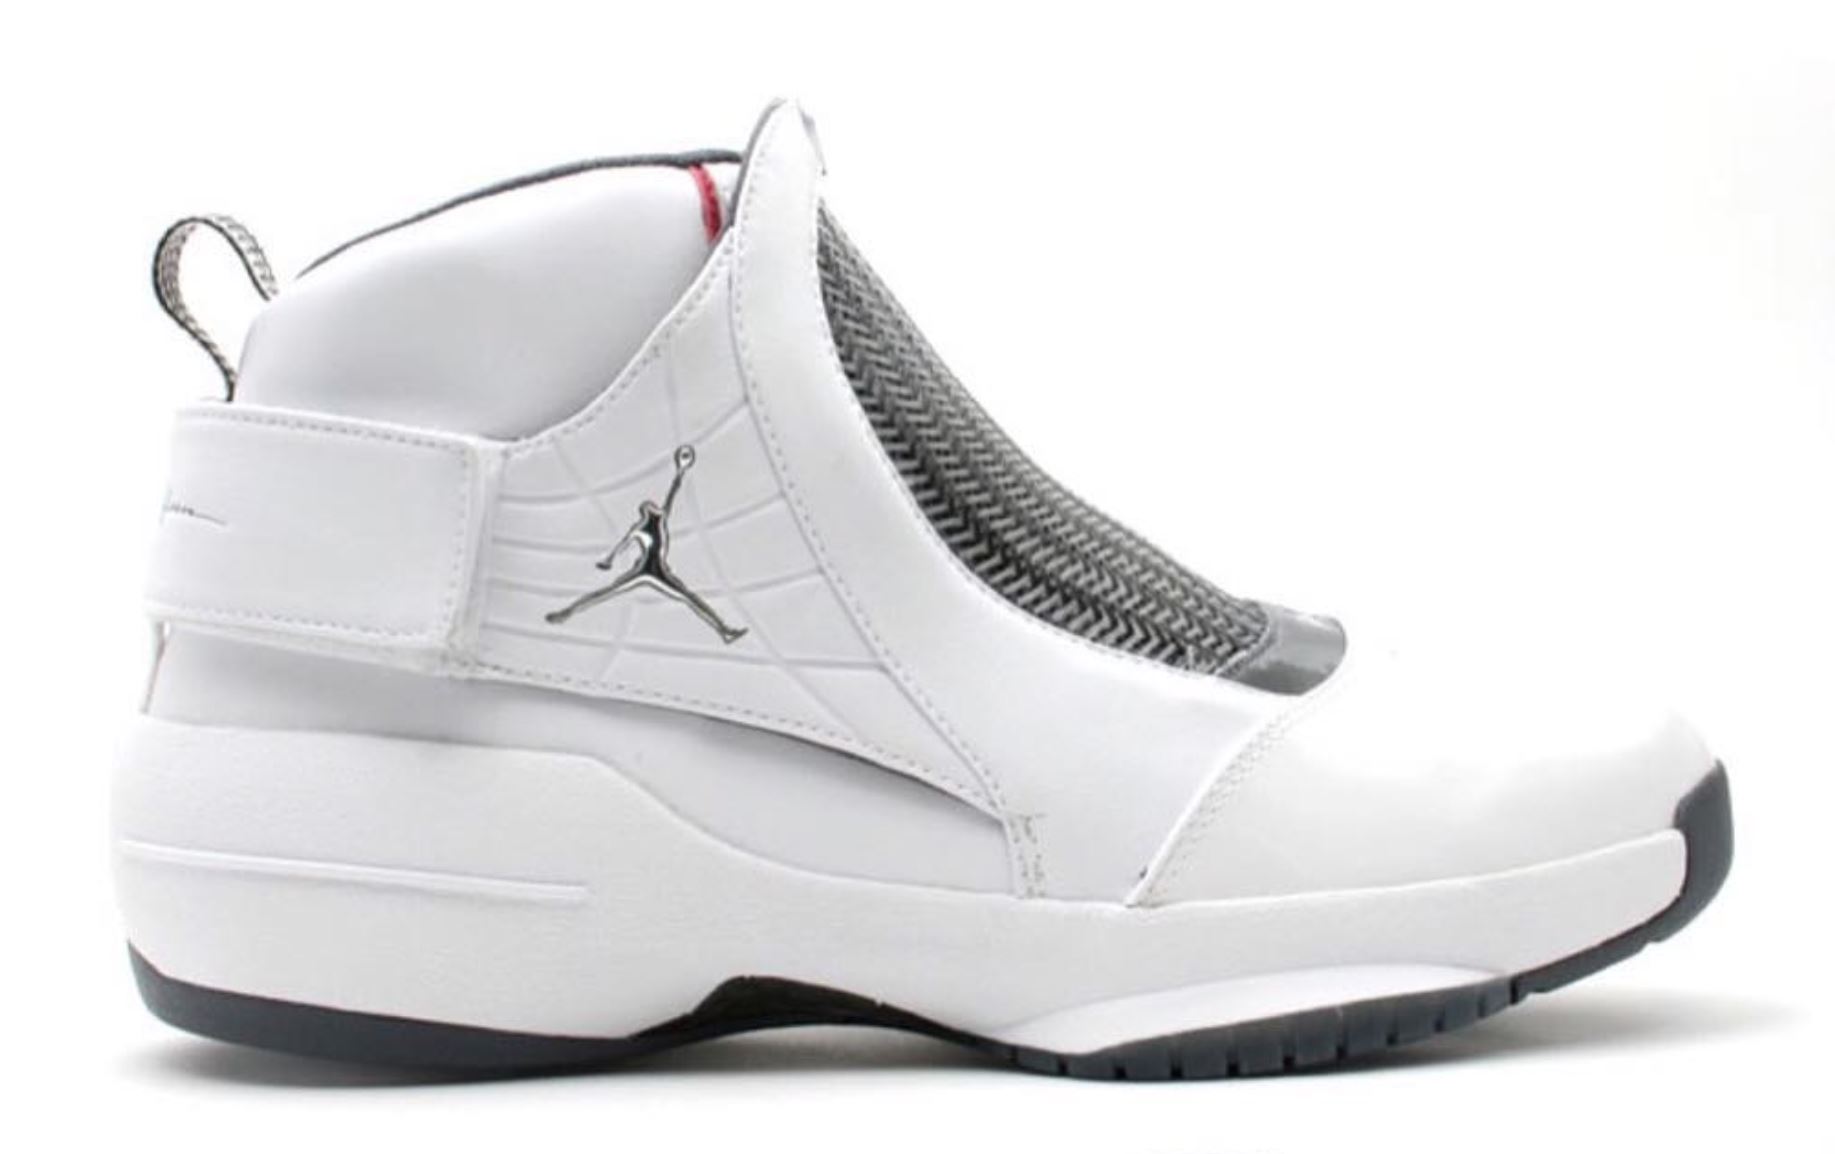 The Air Jordan 19 Will Definitely Be 